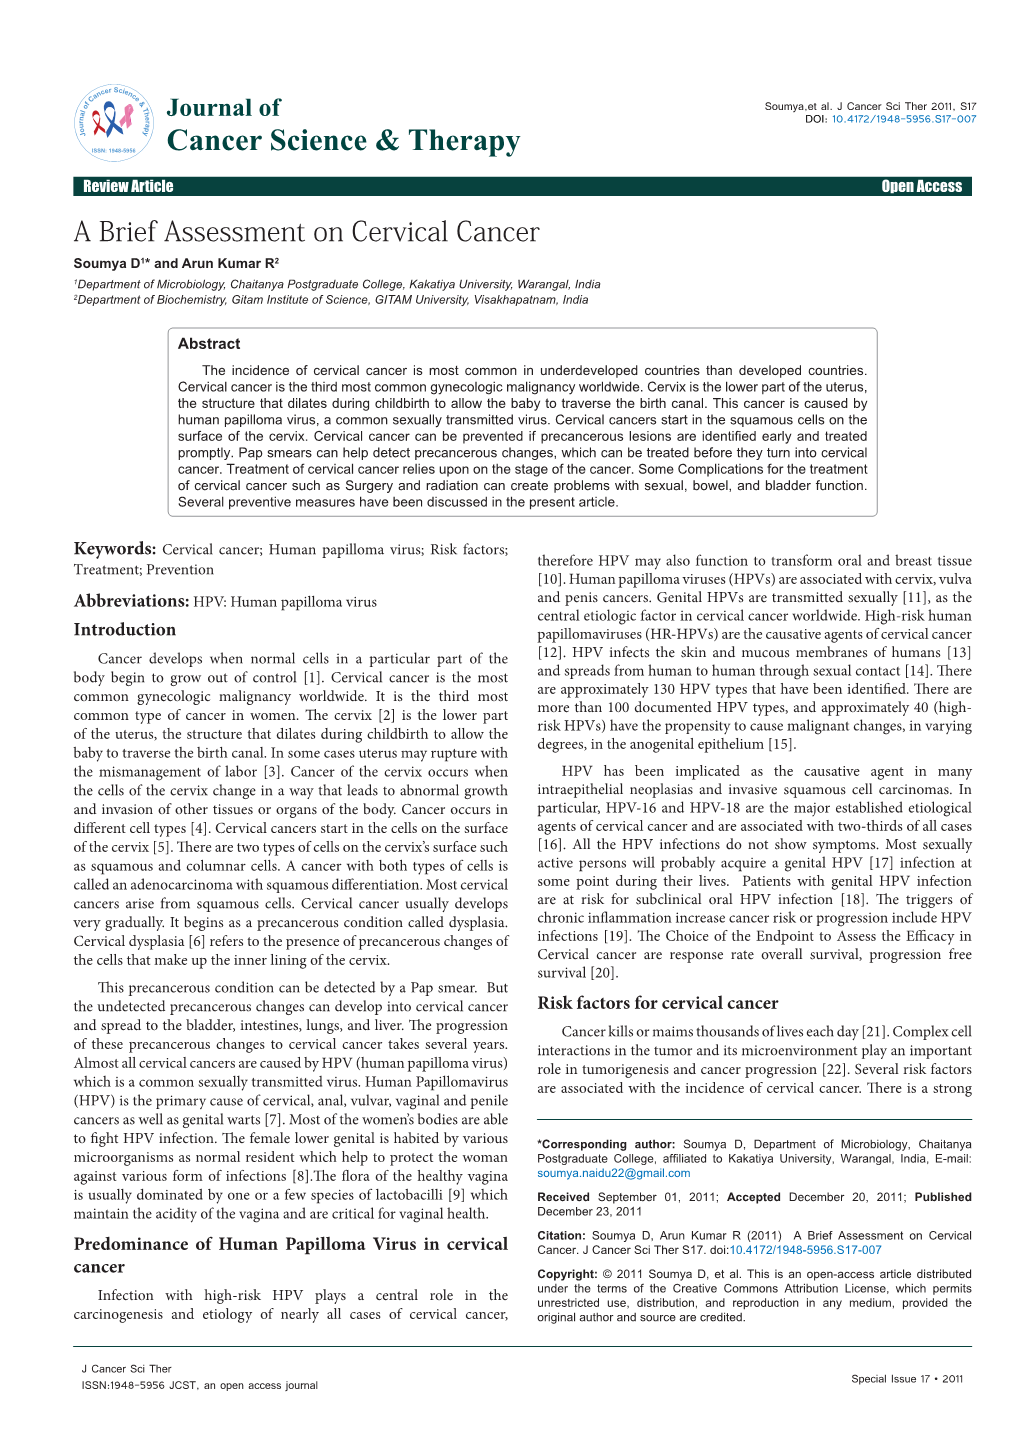 A Brief Assessment on Cervical Cancer